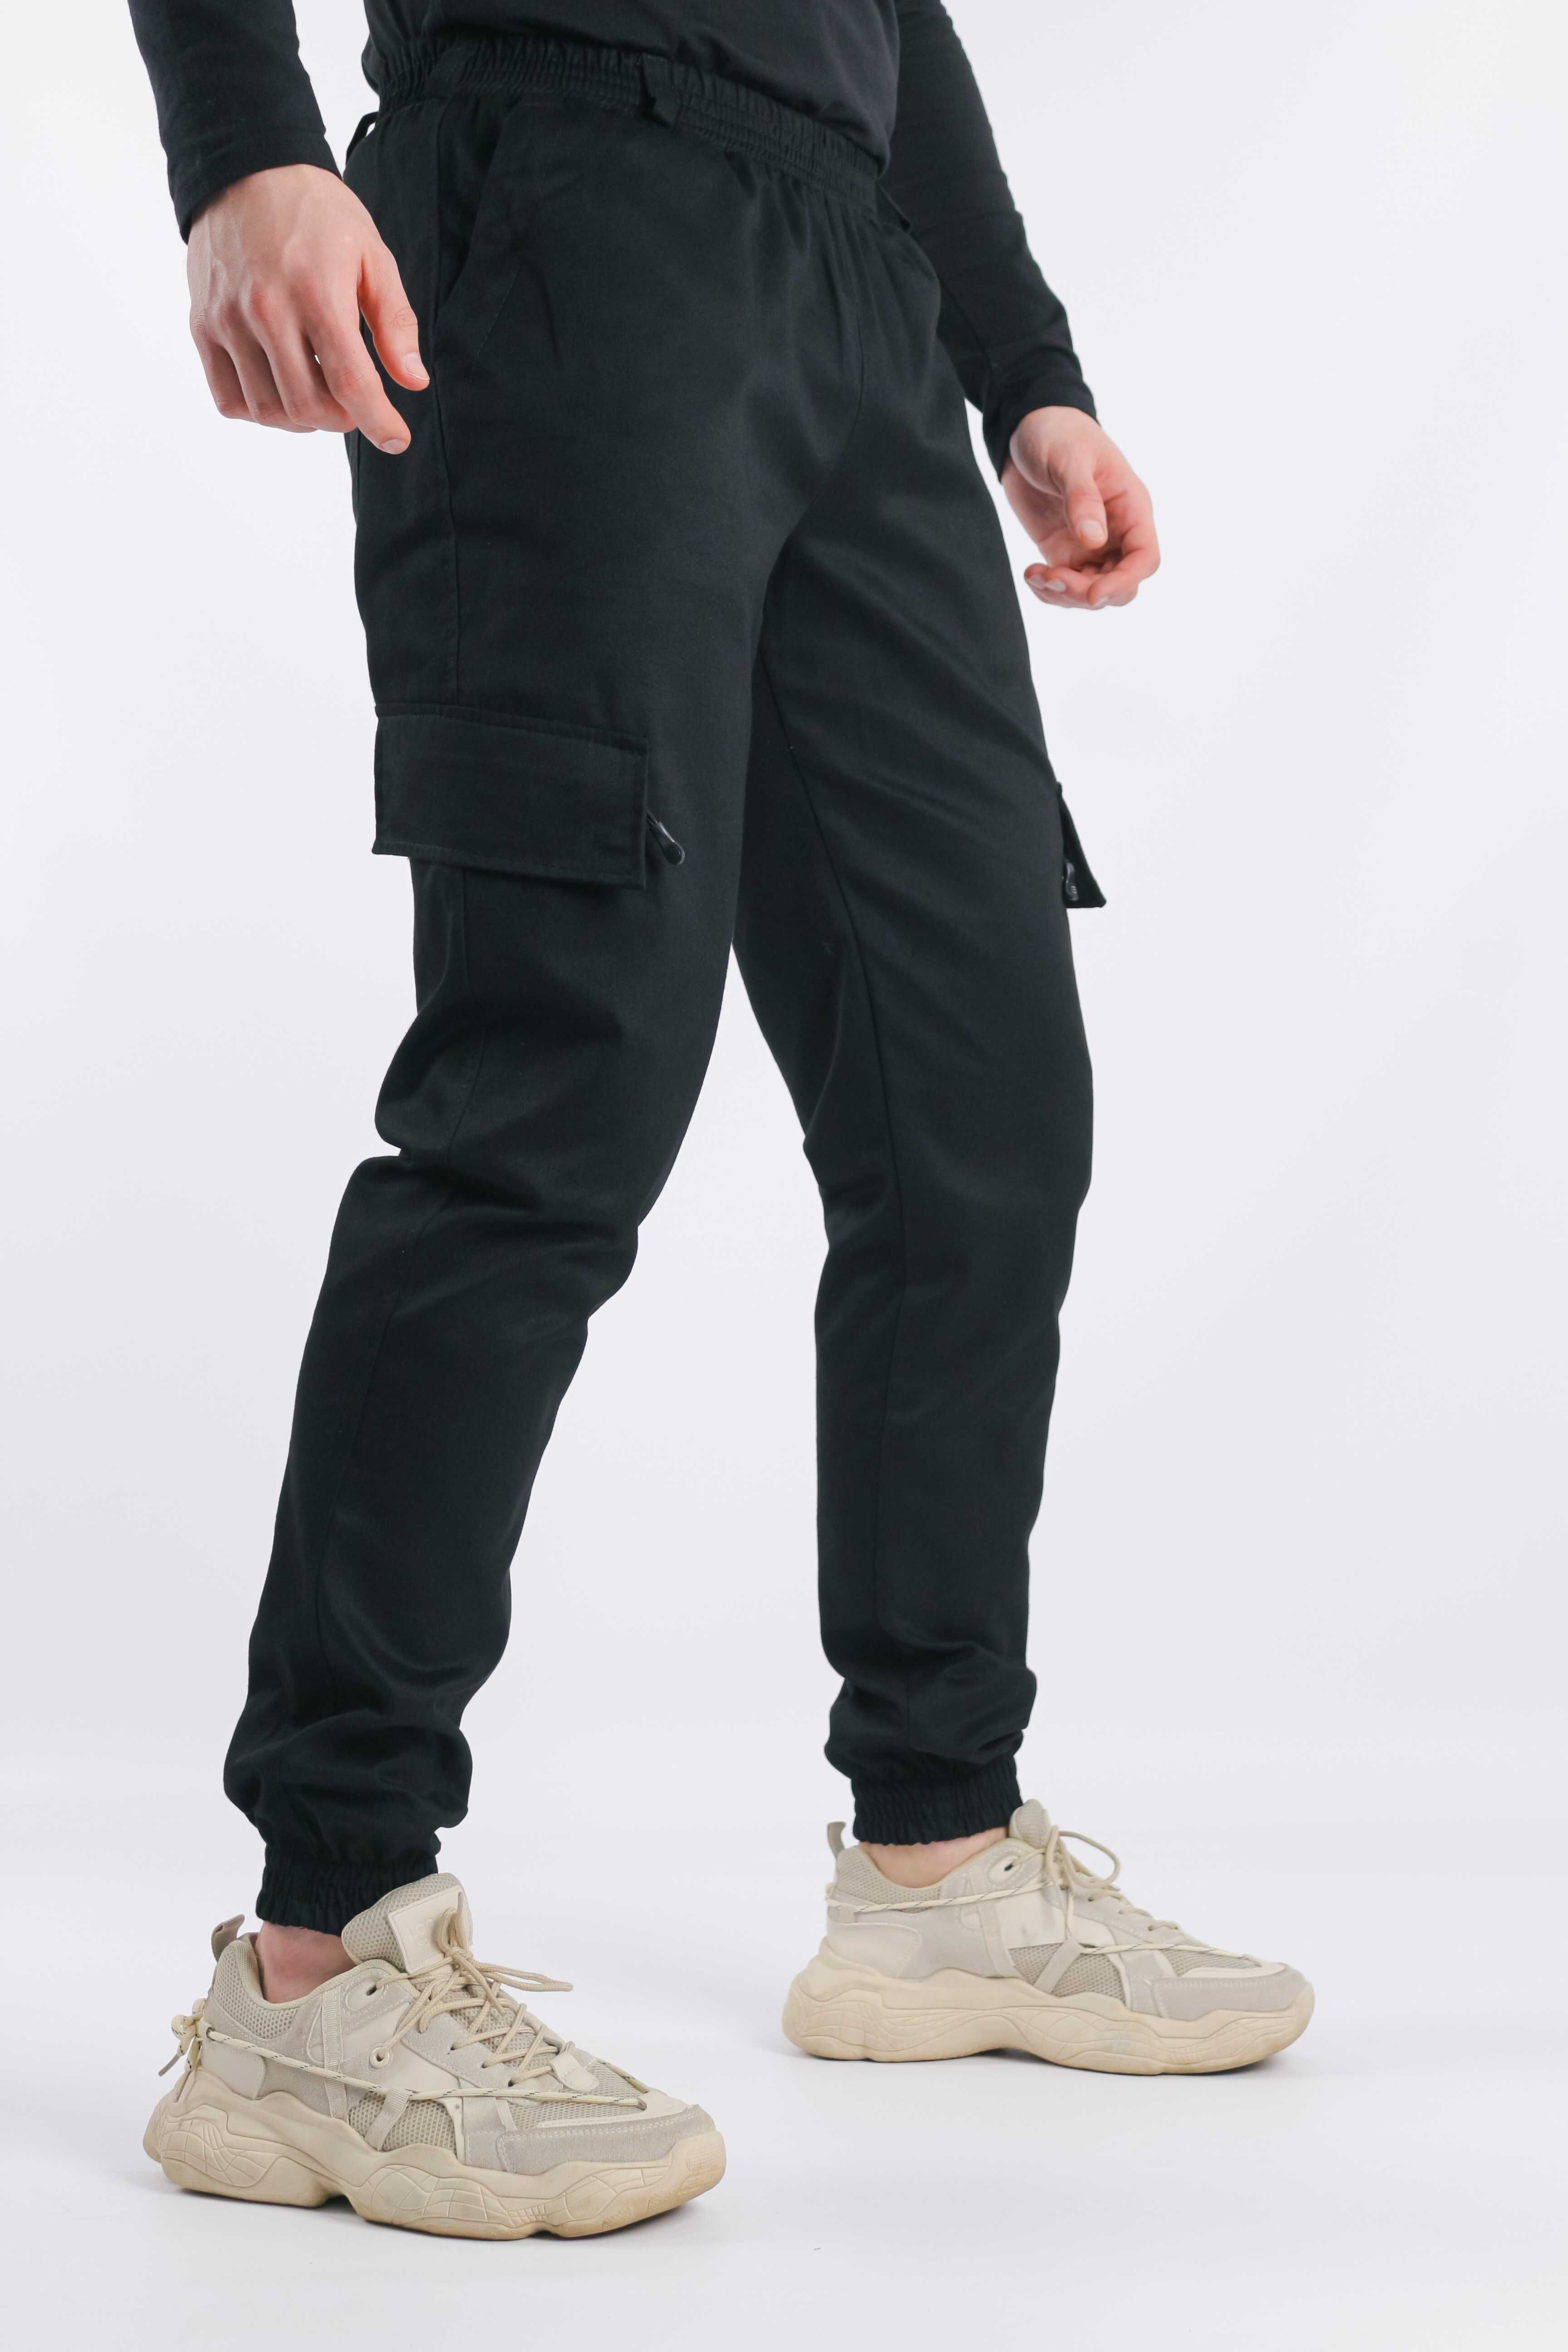 Брюки мужские штаны-карго котоновые черные весенние